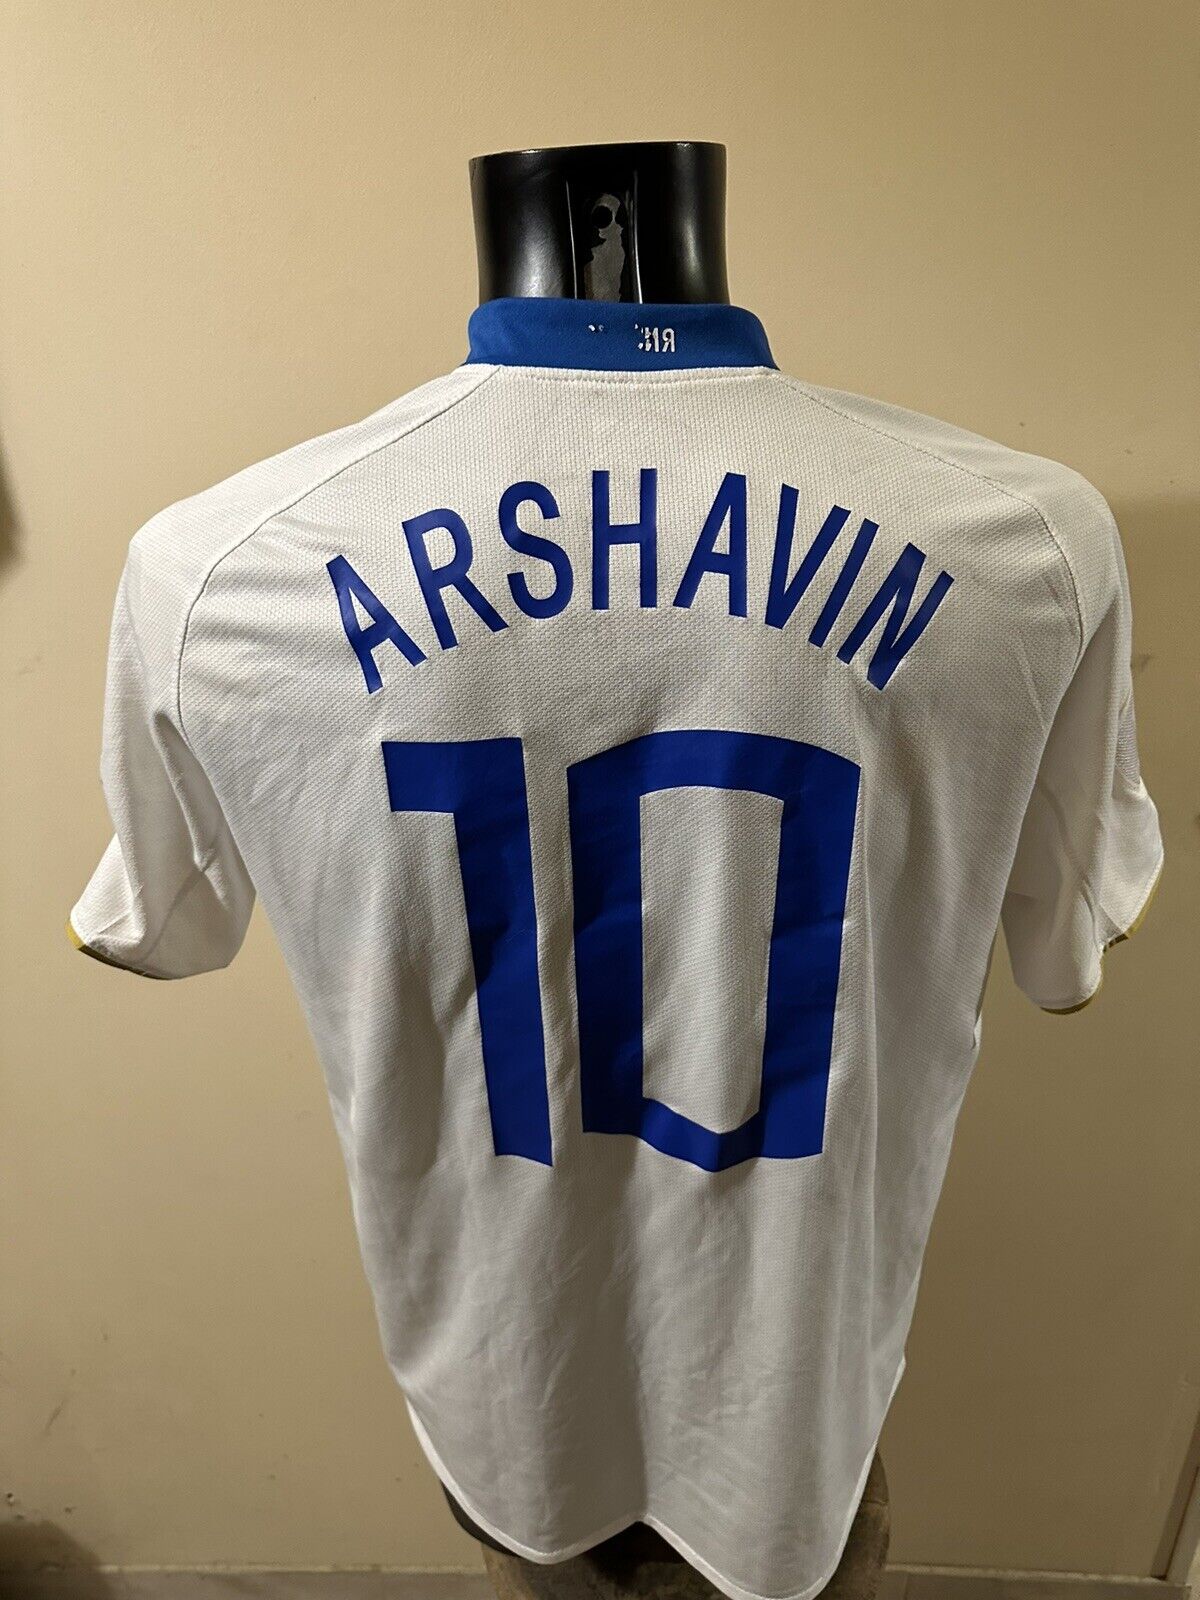 maillot arshavin